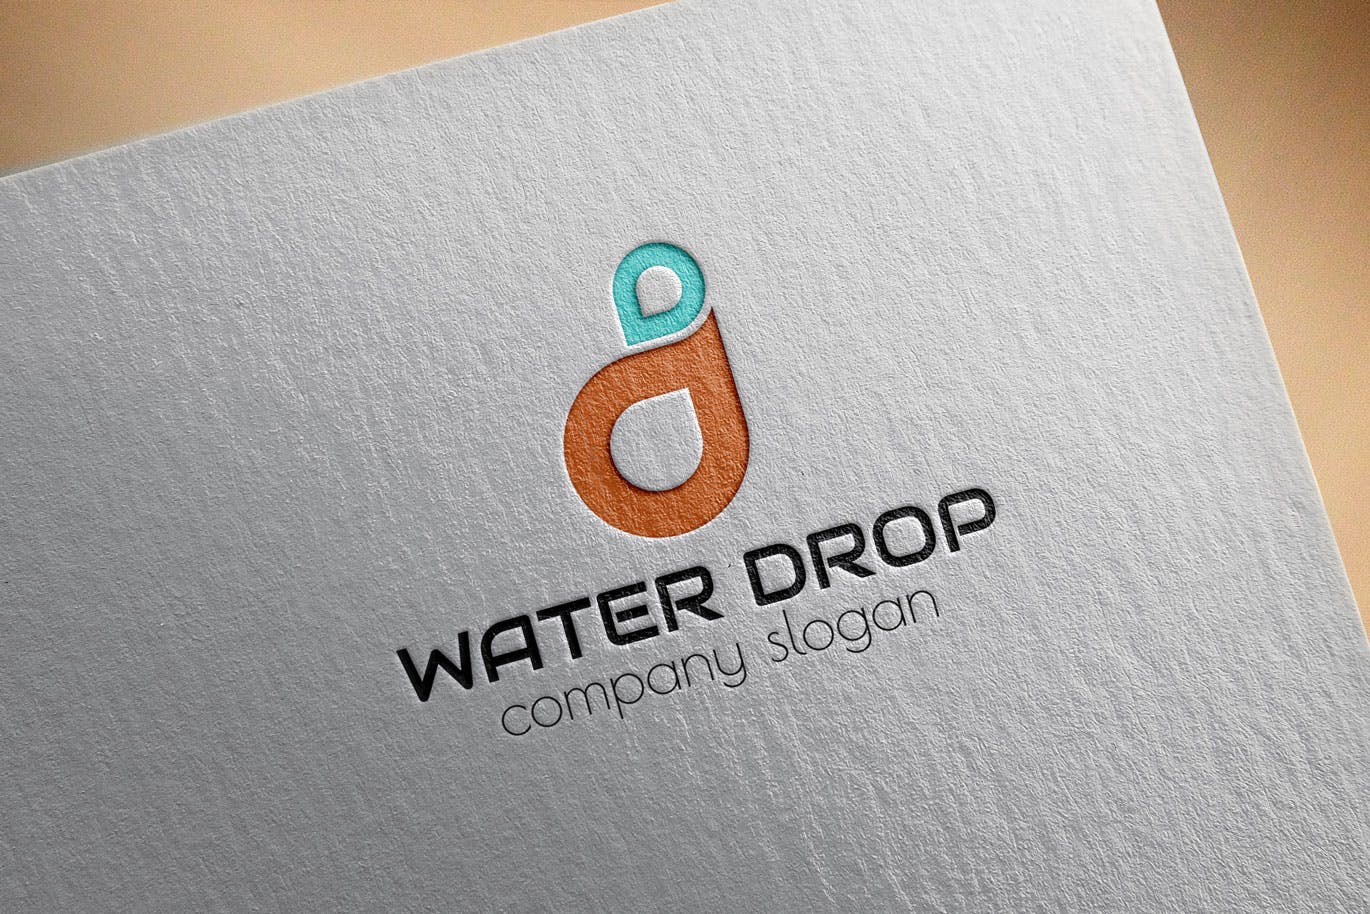 水滴几何图形创意Logo设计第一素材精选模板 Water Drop Creative Logo Template插图(2)